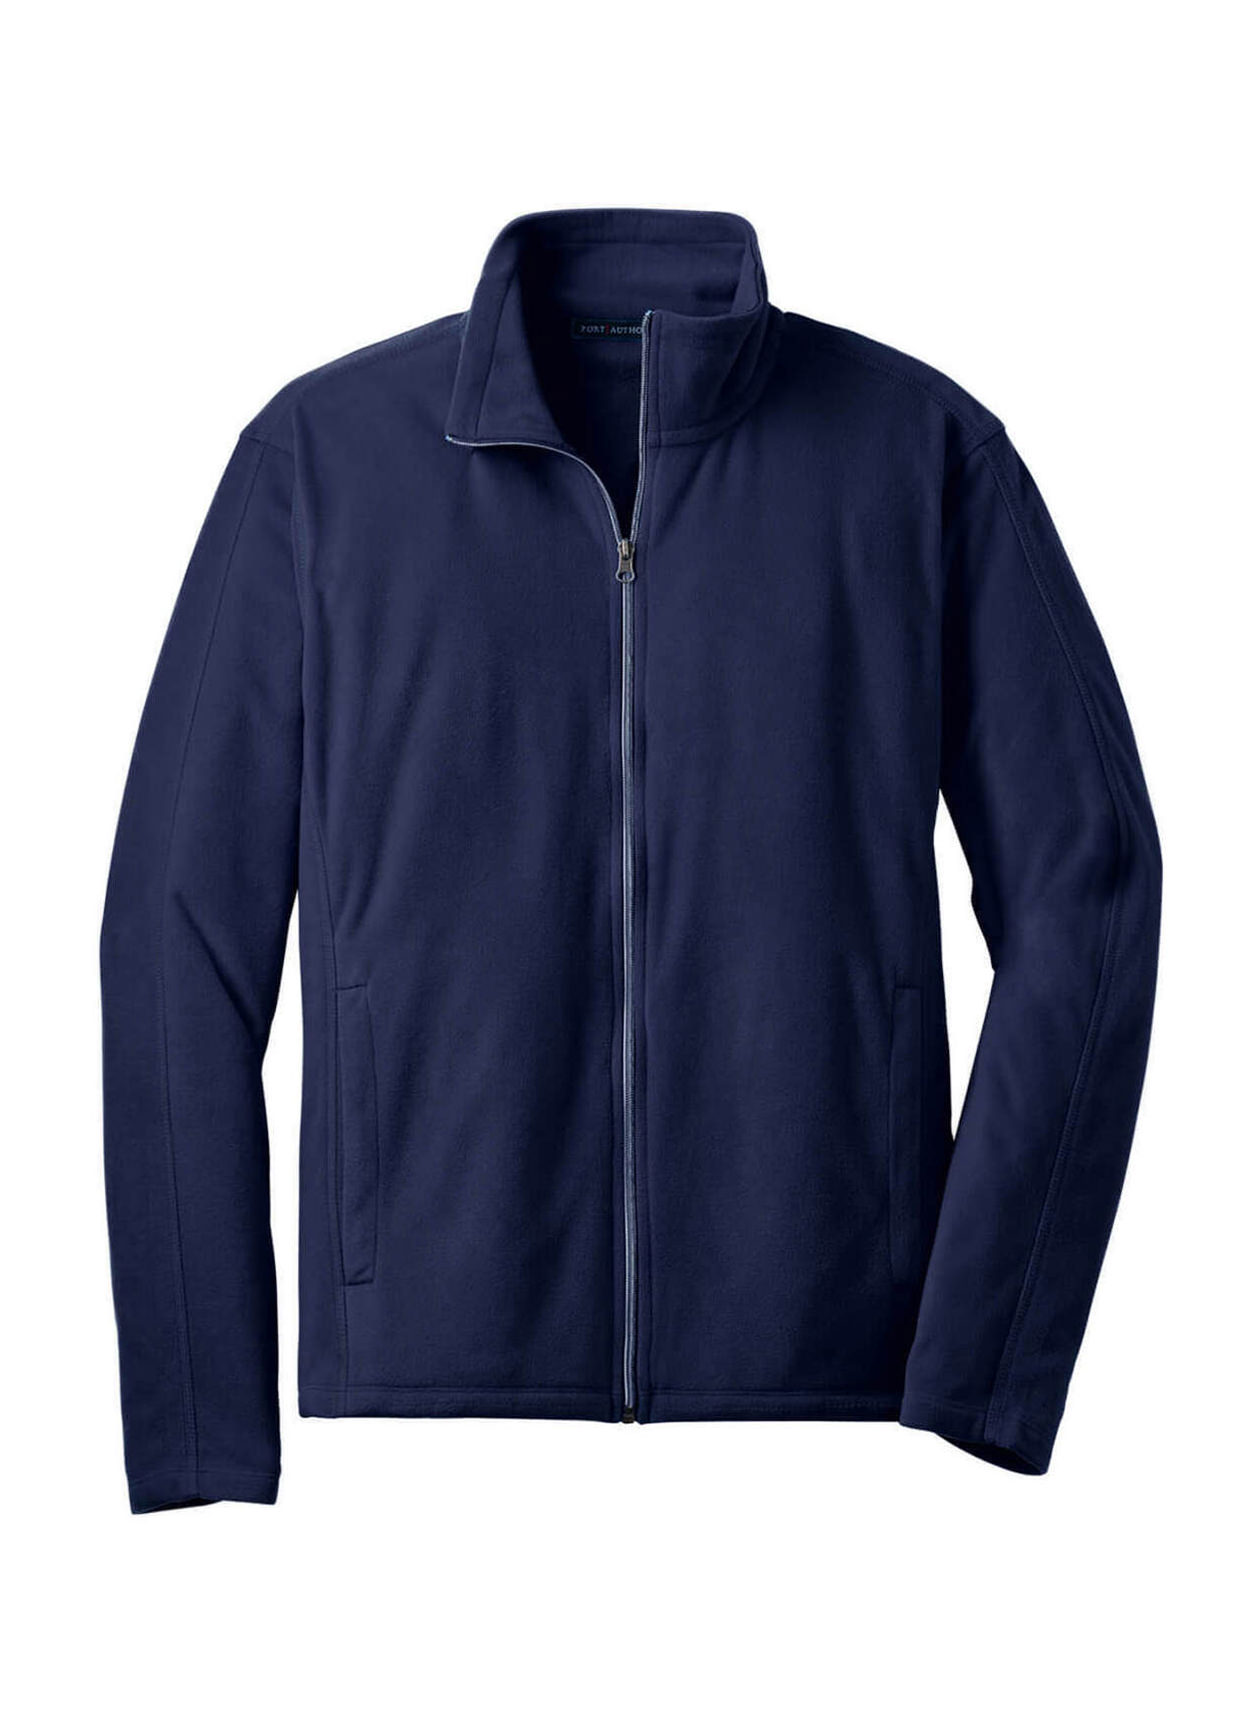 Branded Port Authority Men's True Navy Microfleece Jacket